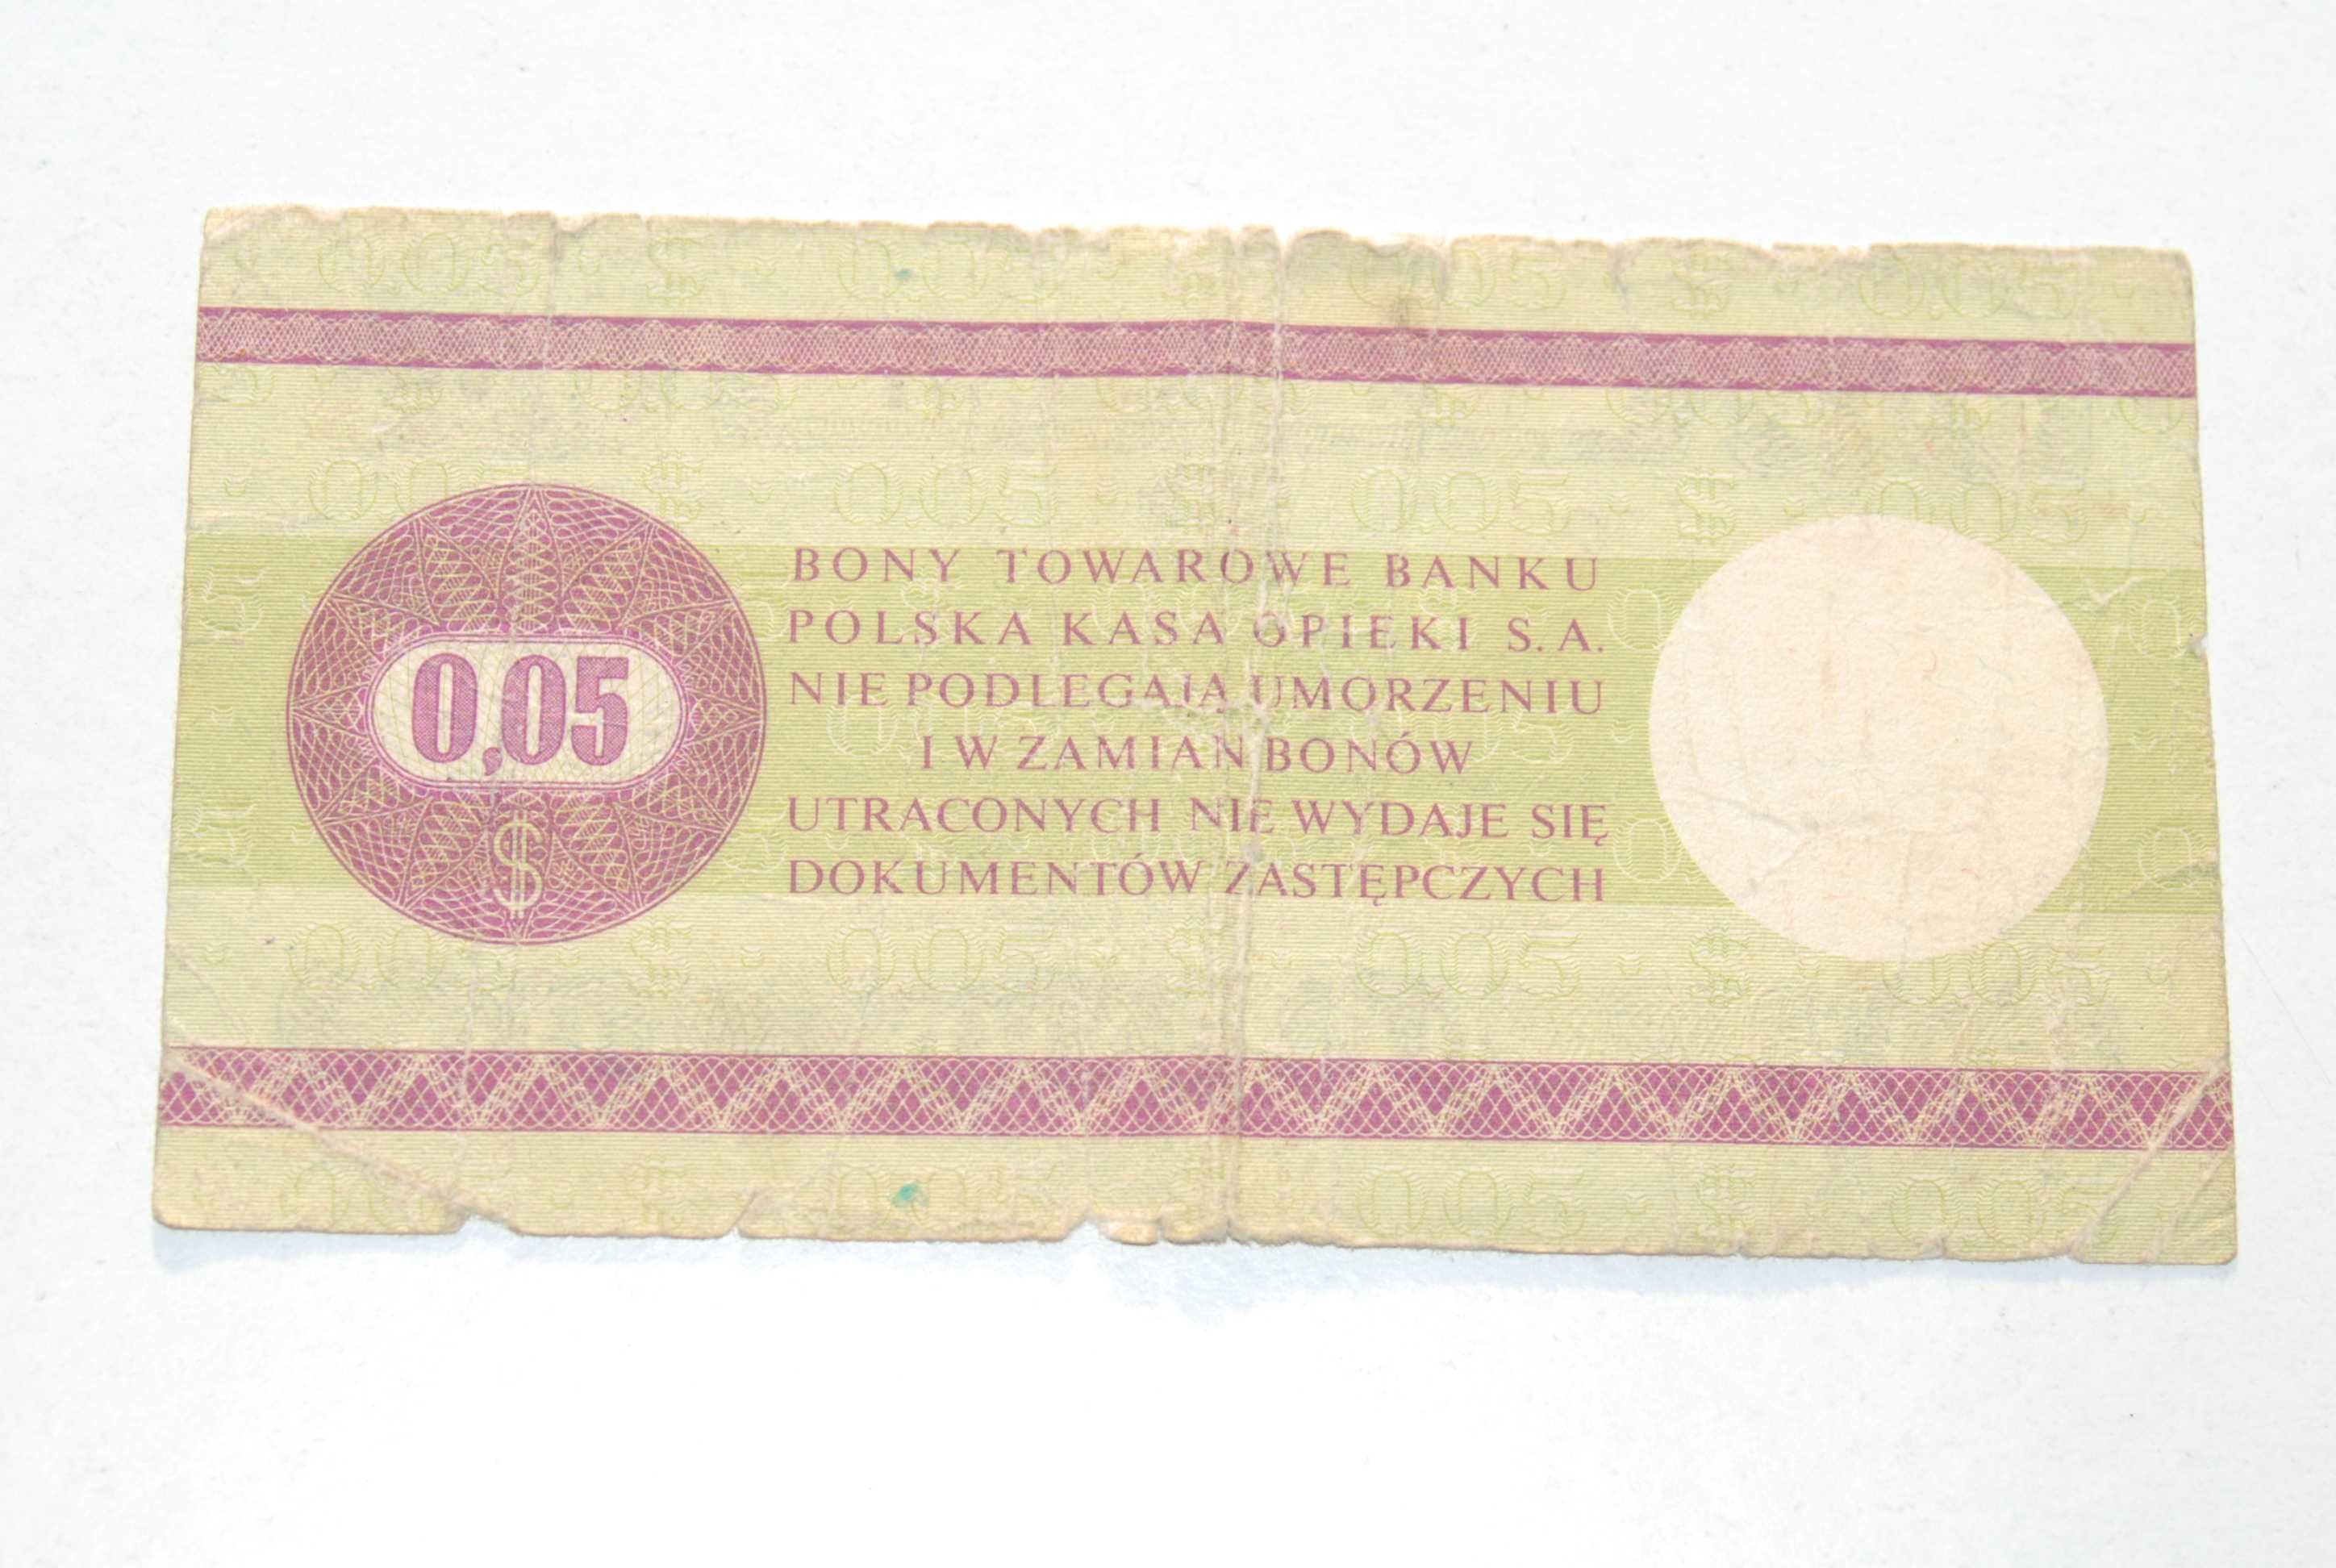 Stary Bon Towarowy Pko 0,05 Dolar Pewex 1979 antyk